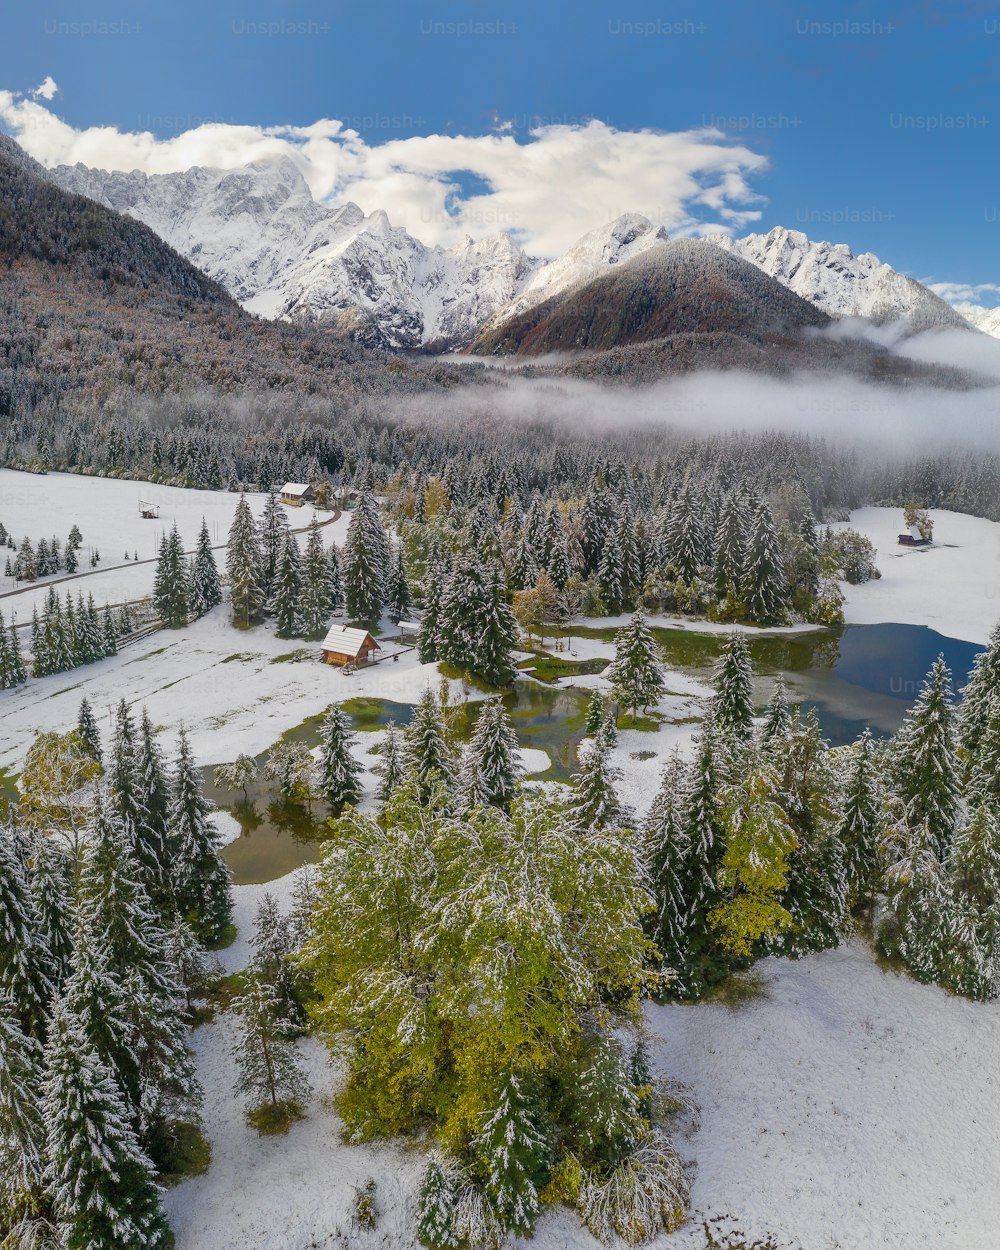 Un paisaje nevado con una pequeña cabaña en el medio